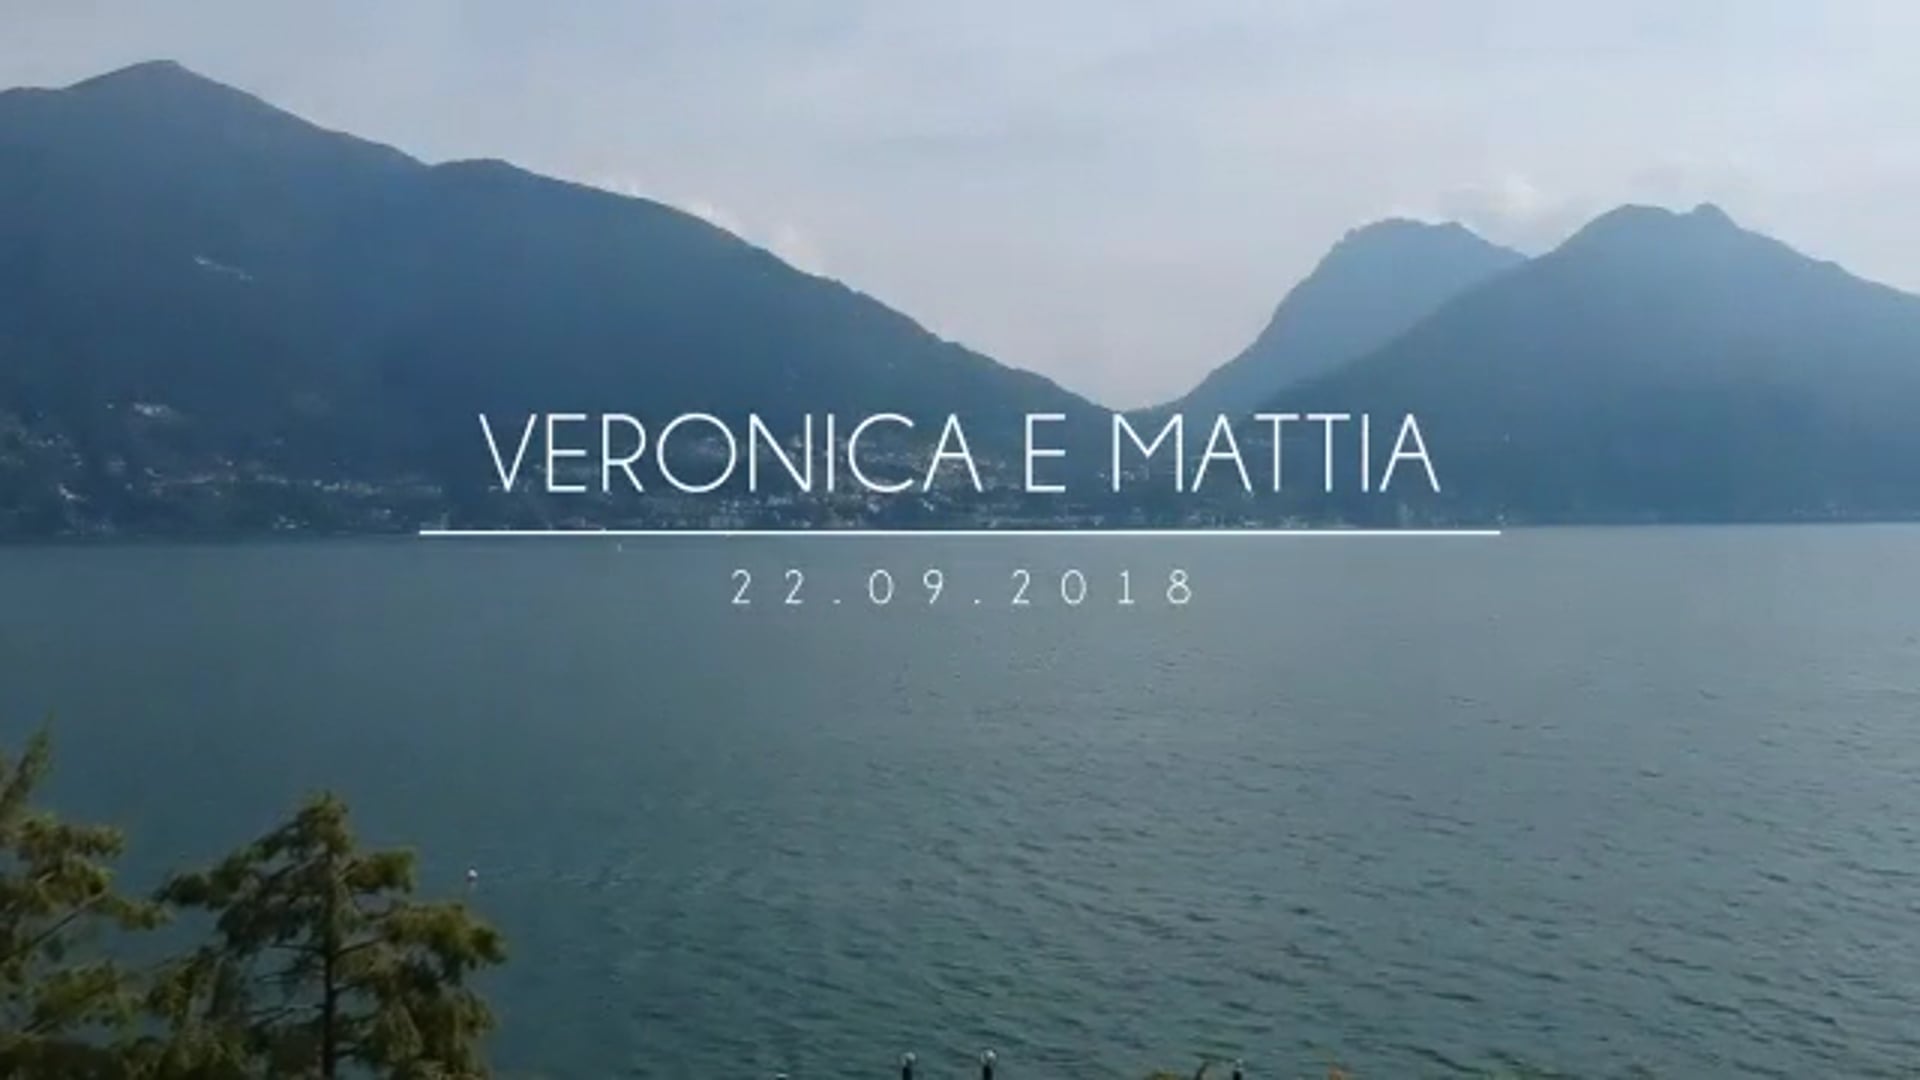 Veronica & Mattia Wedding